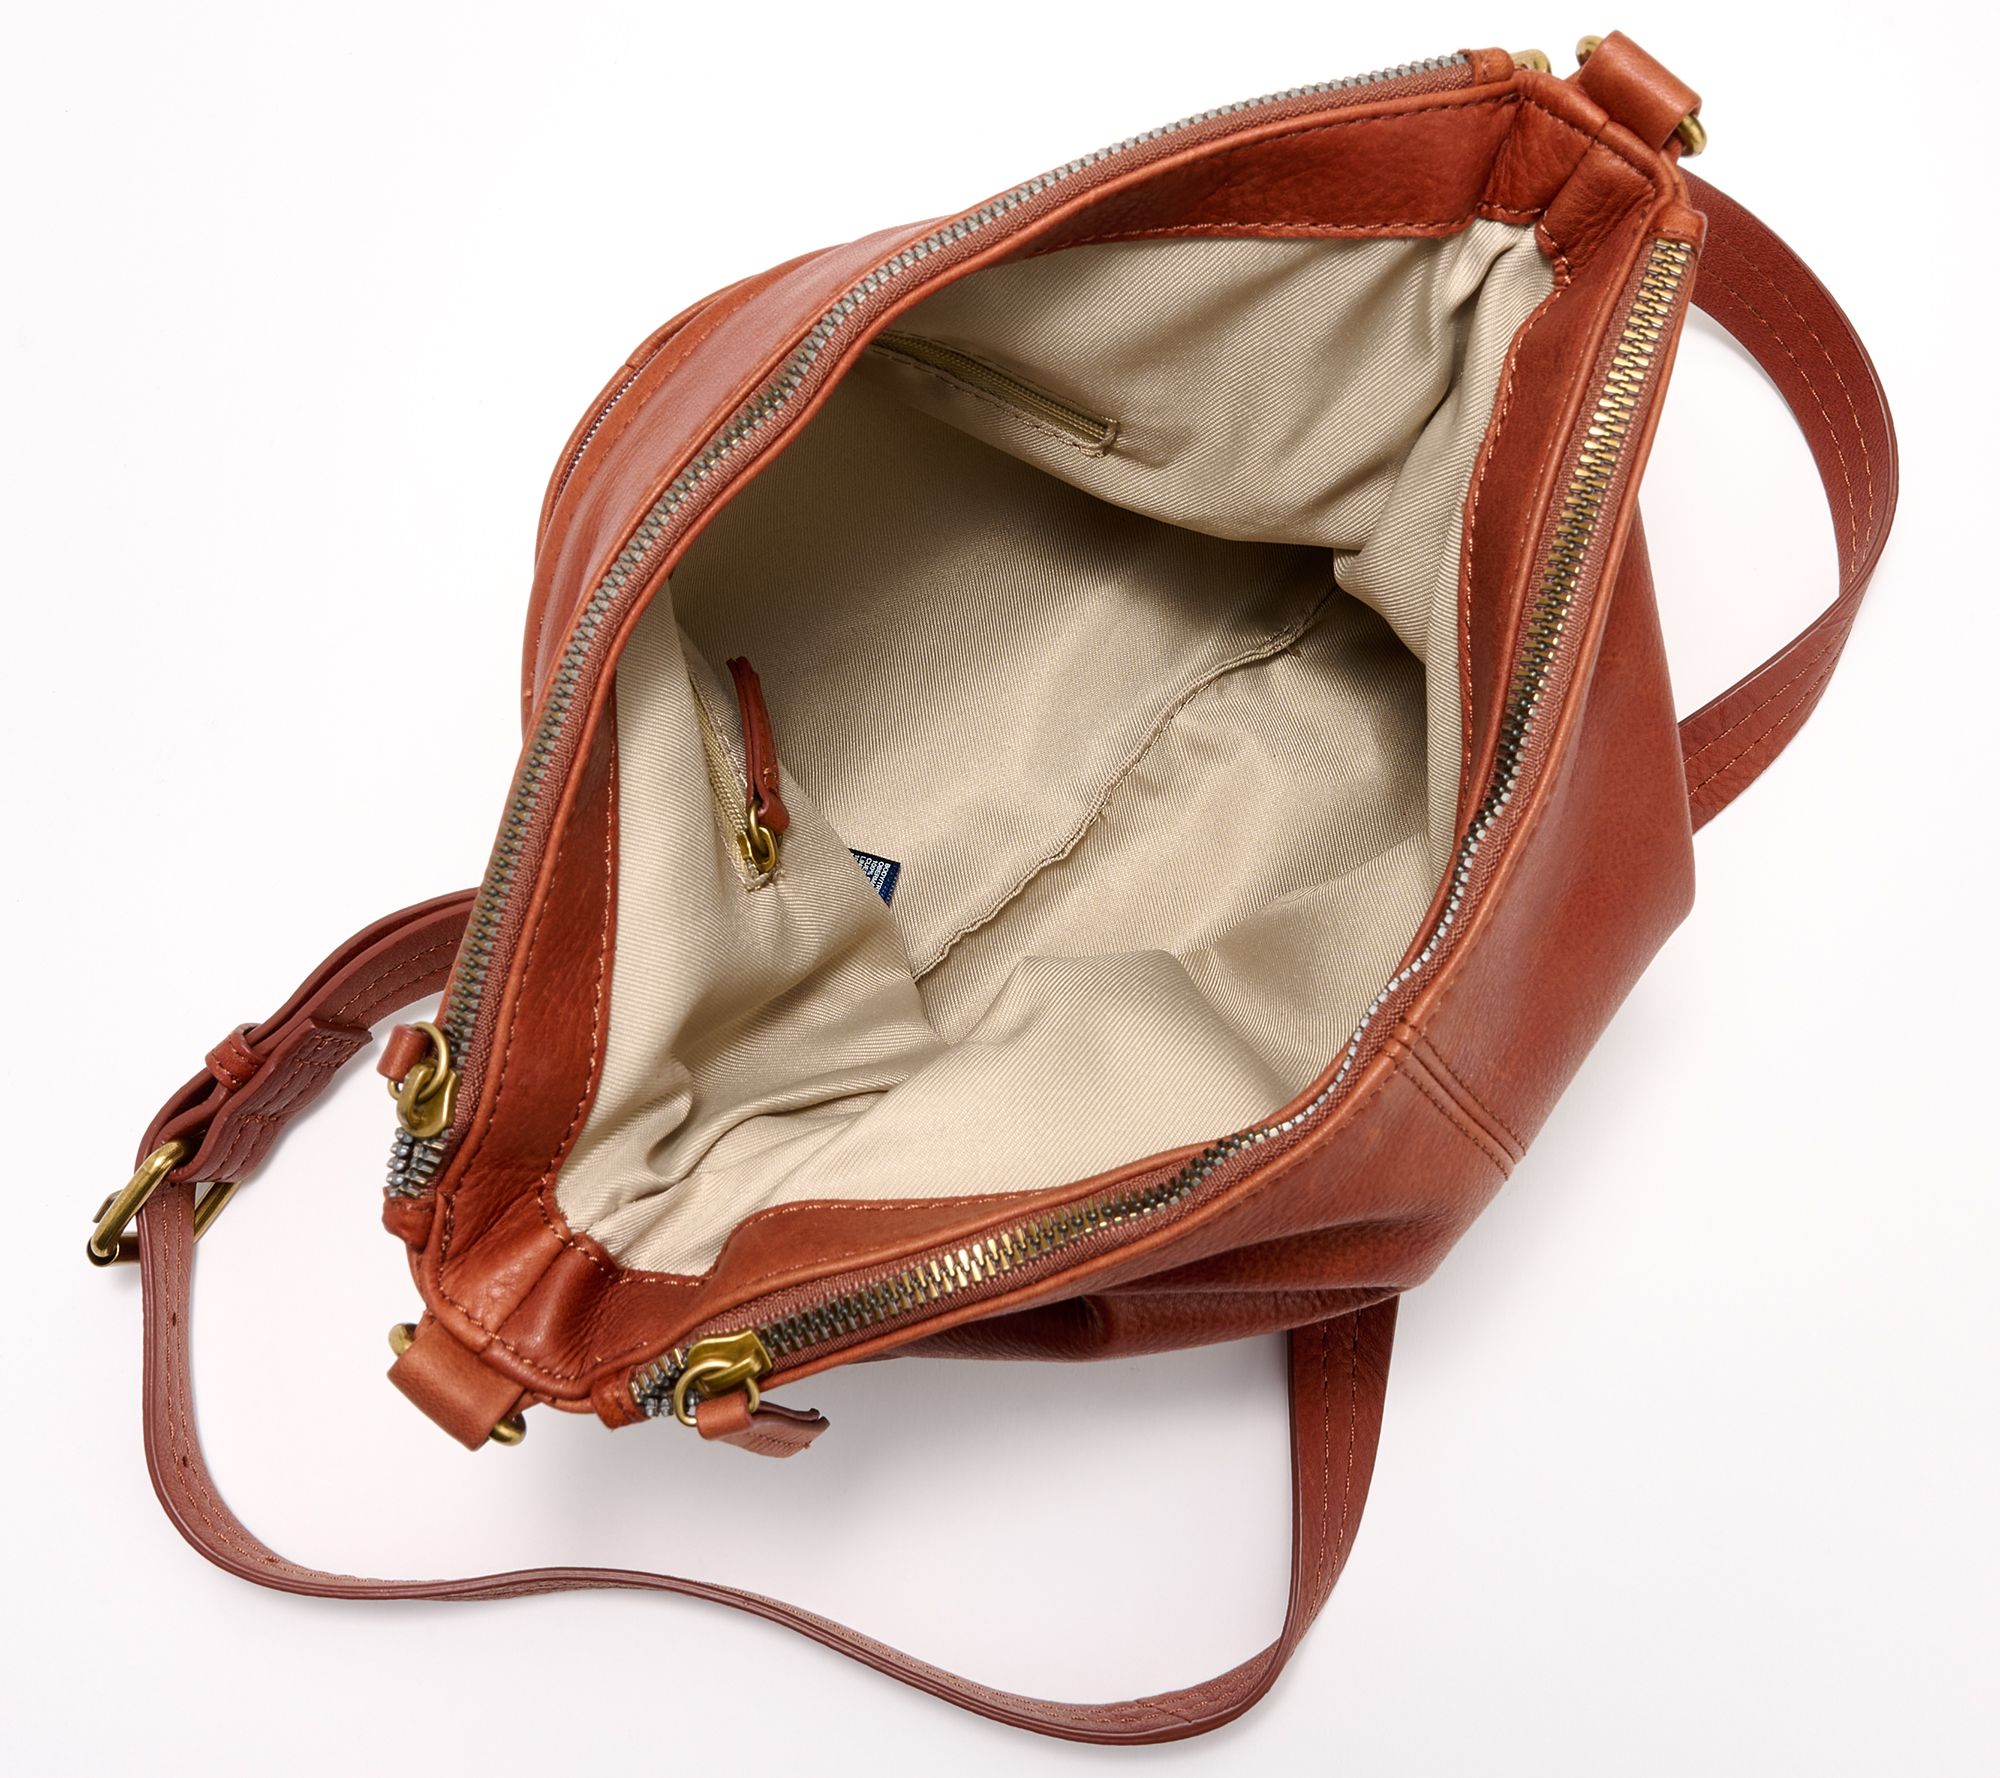 Fossil Camel Brown Leather Large Tote Handbag Shoulder Bag 2 Front Pockets  Purse